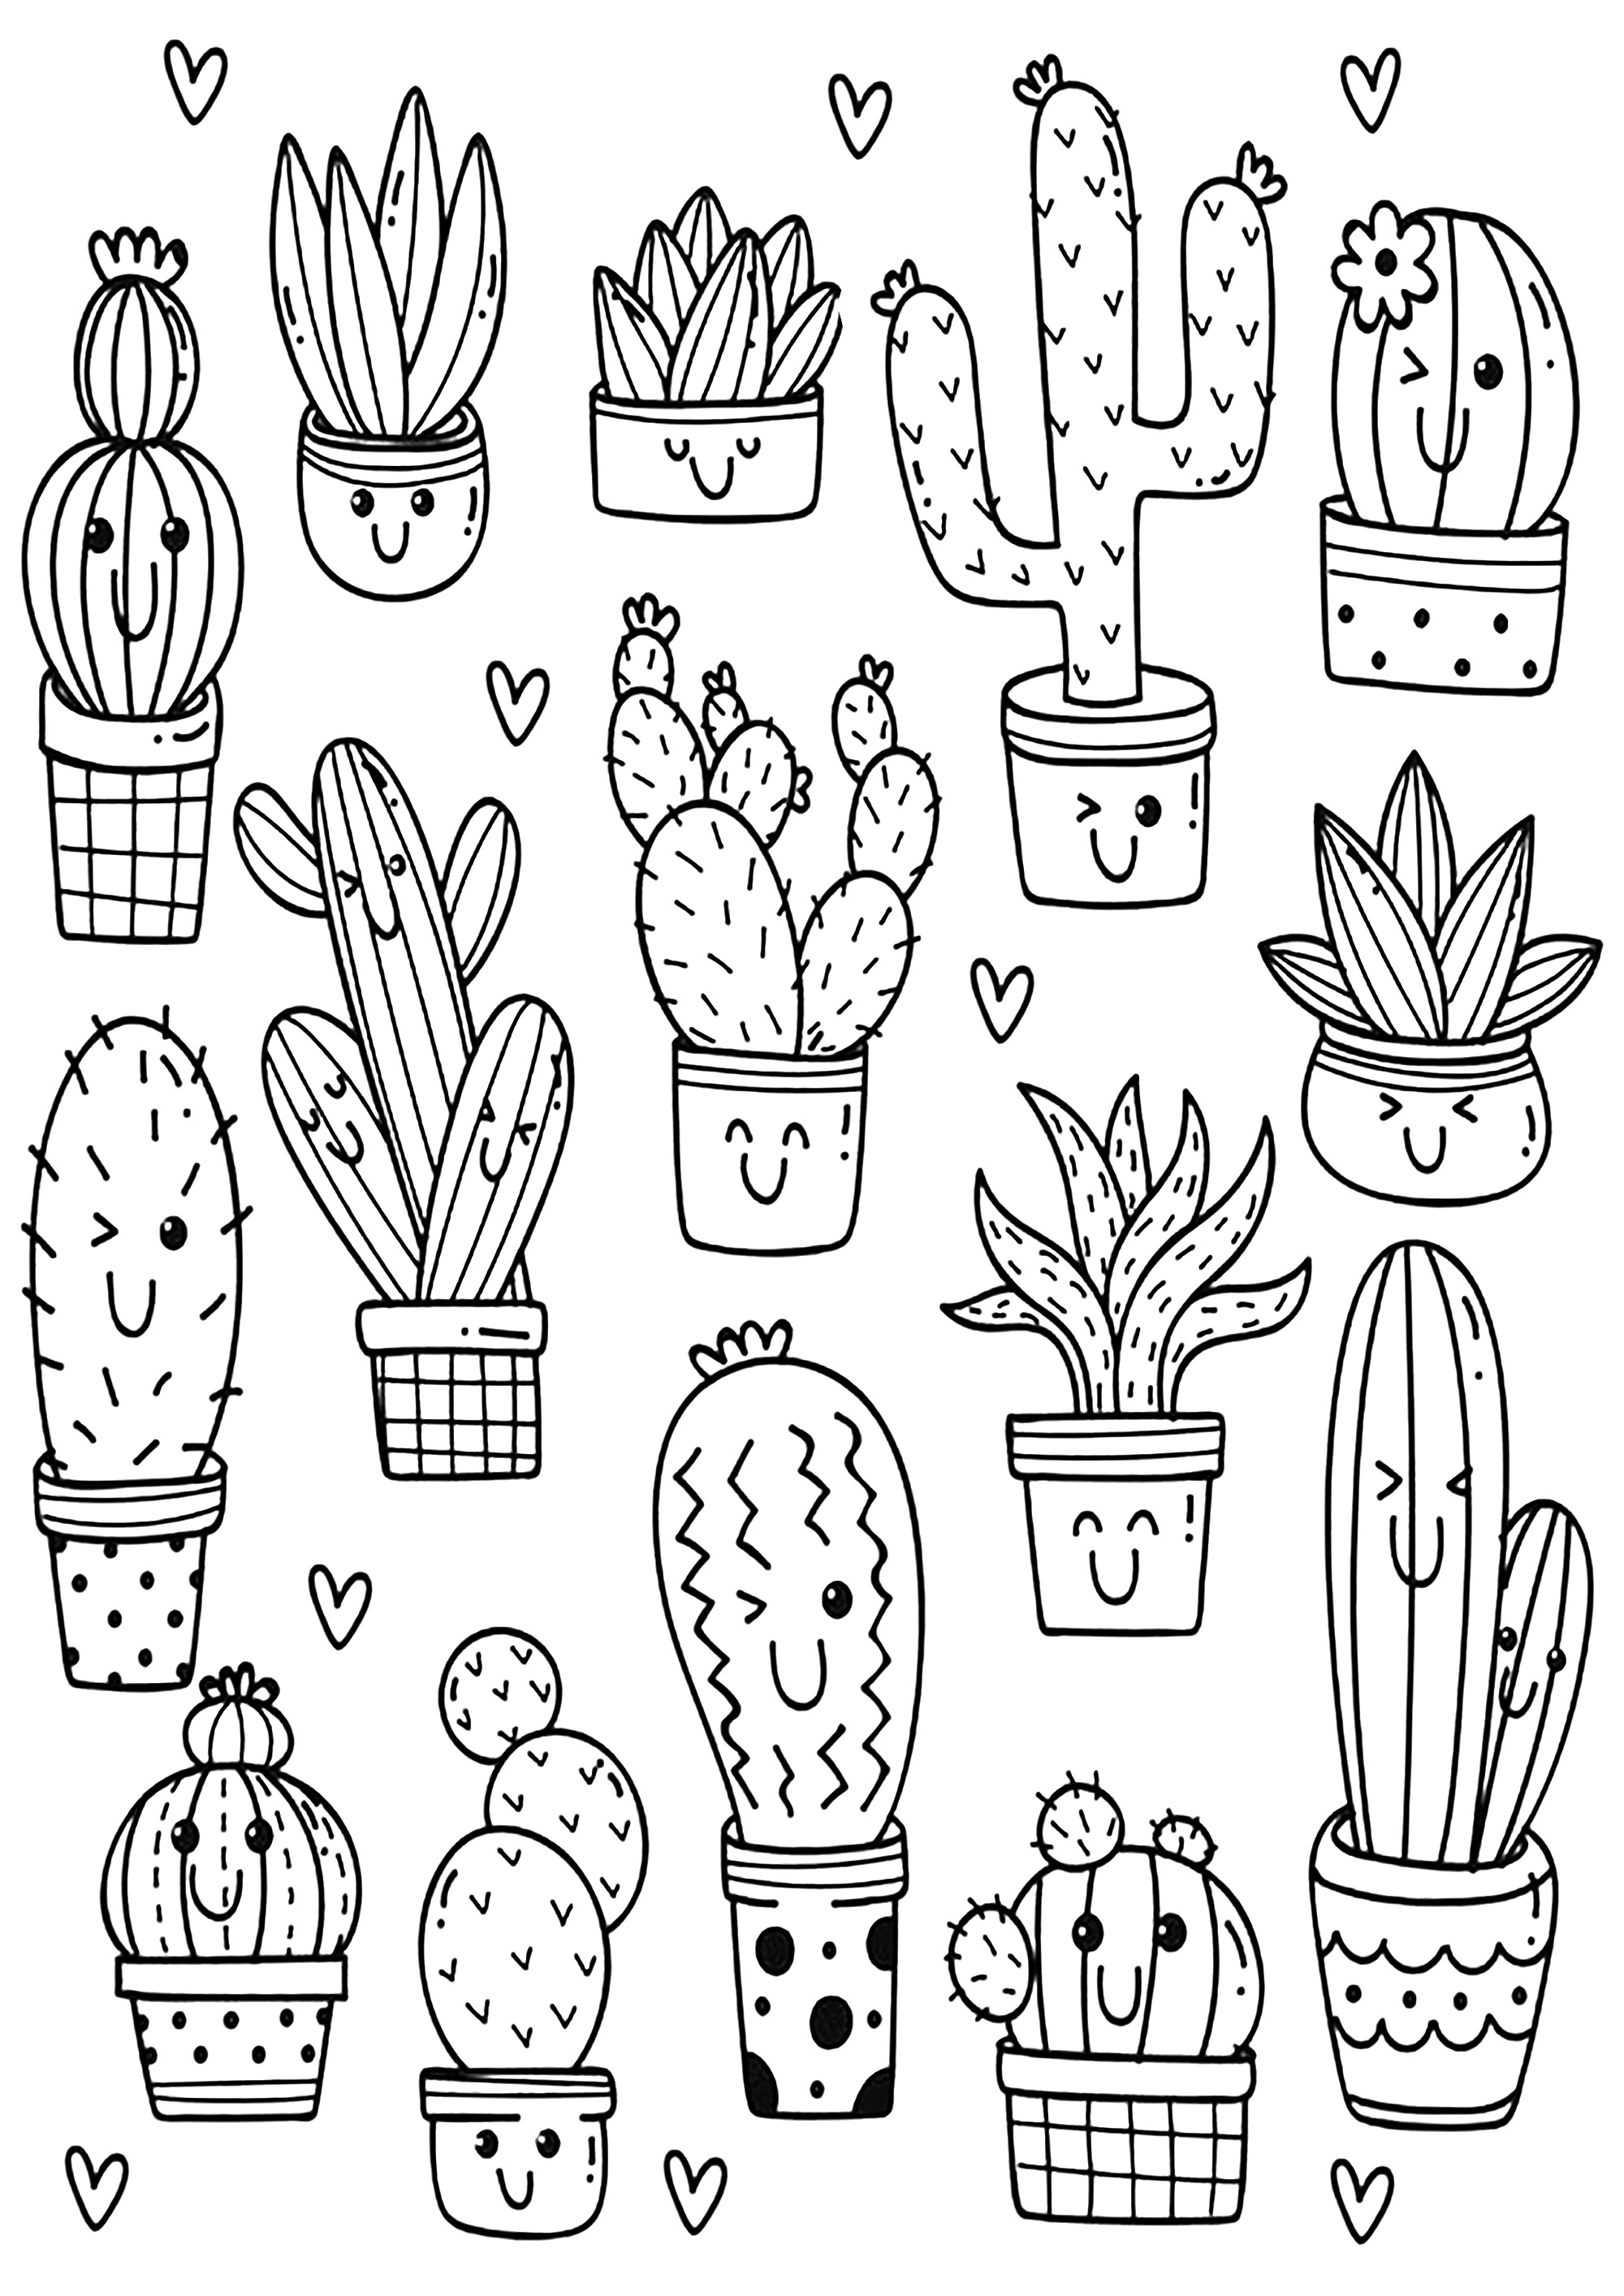 Plusieurs jolis cactus dessinés simplement. Coloriez chacun de ces jolis cactus, pour un moment de détente assurée